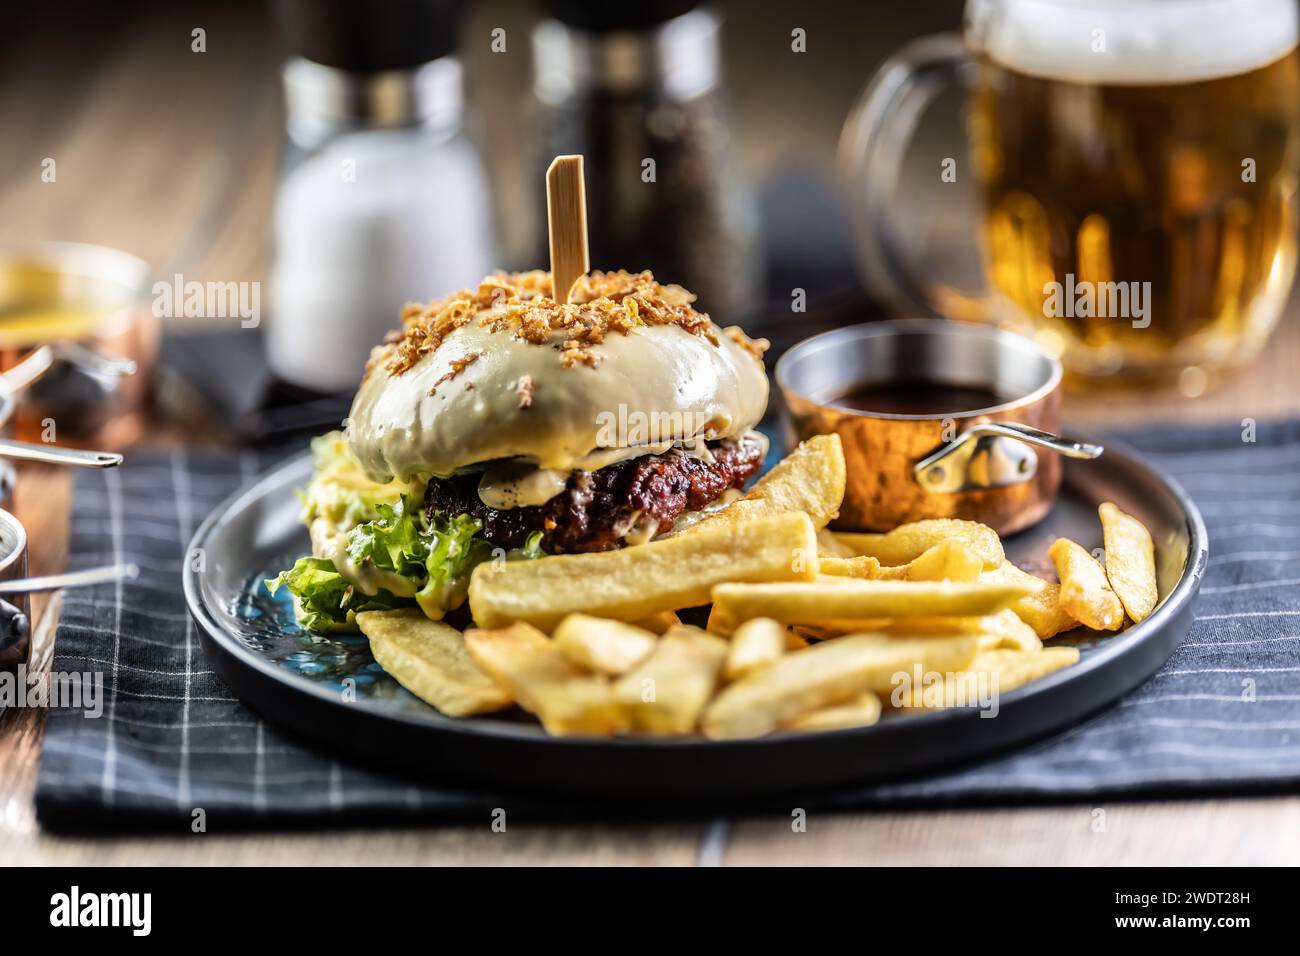 Hamburger di manzo con formaggio con patatine fritte e birra alla spina su un piatto da pub o ristorante. Foto Stock